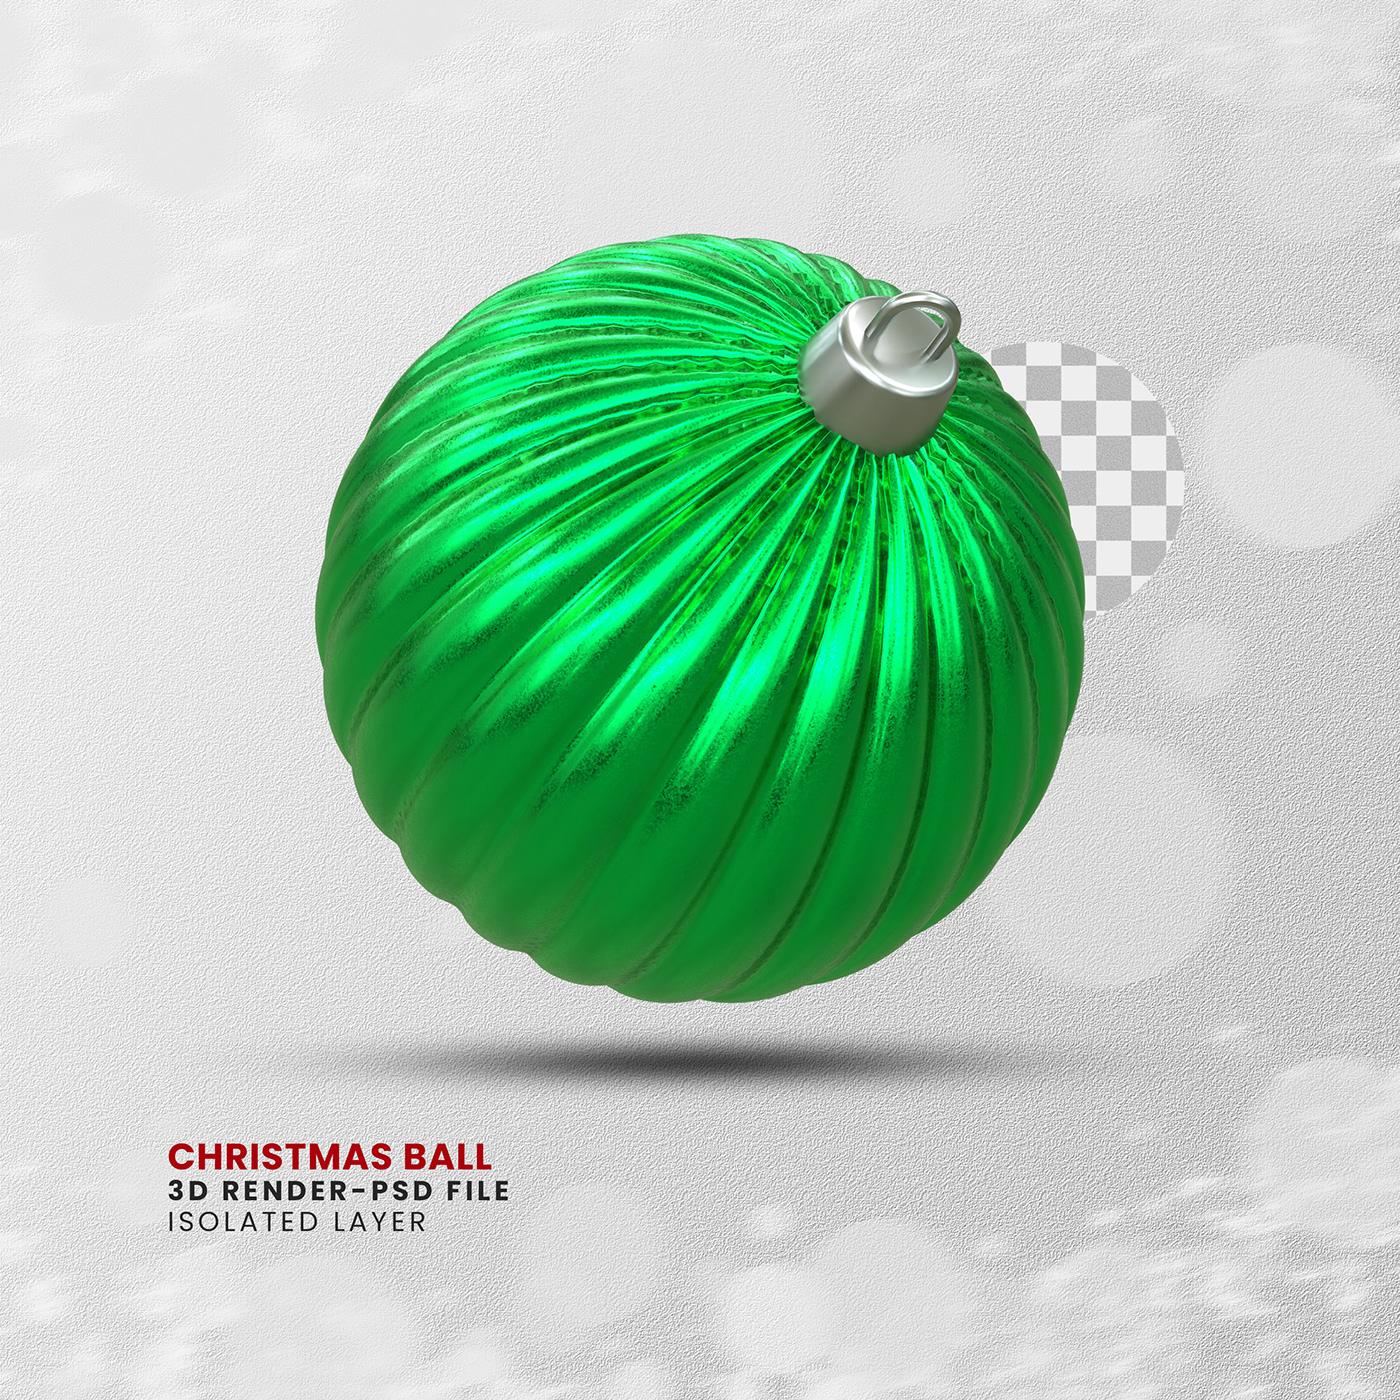 3D Rendering modeling Render visualization photoshop blender Christmas product design 